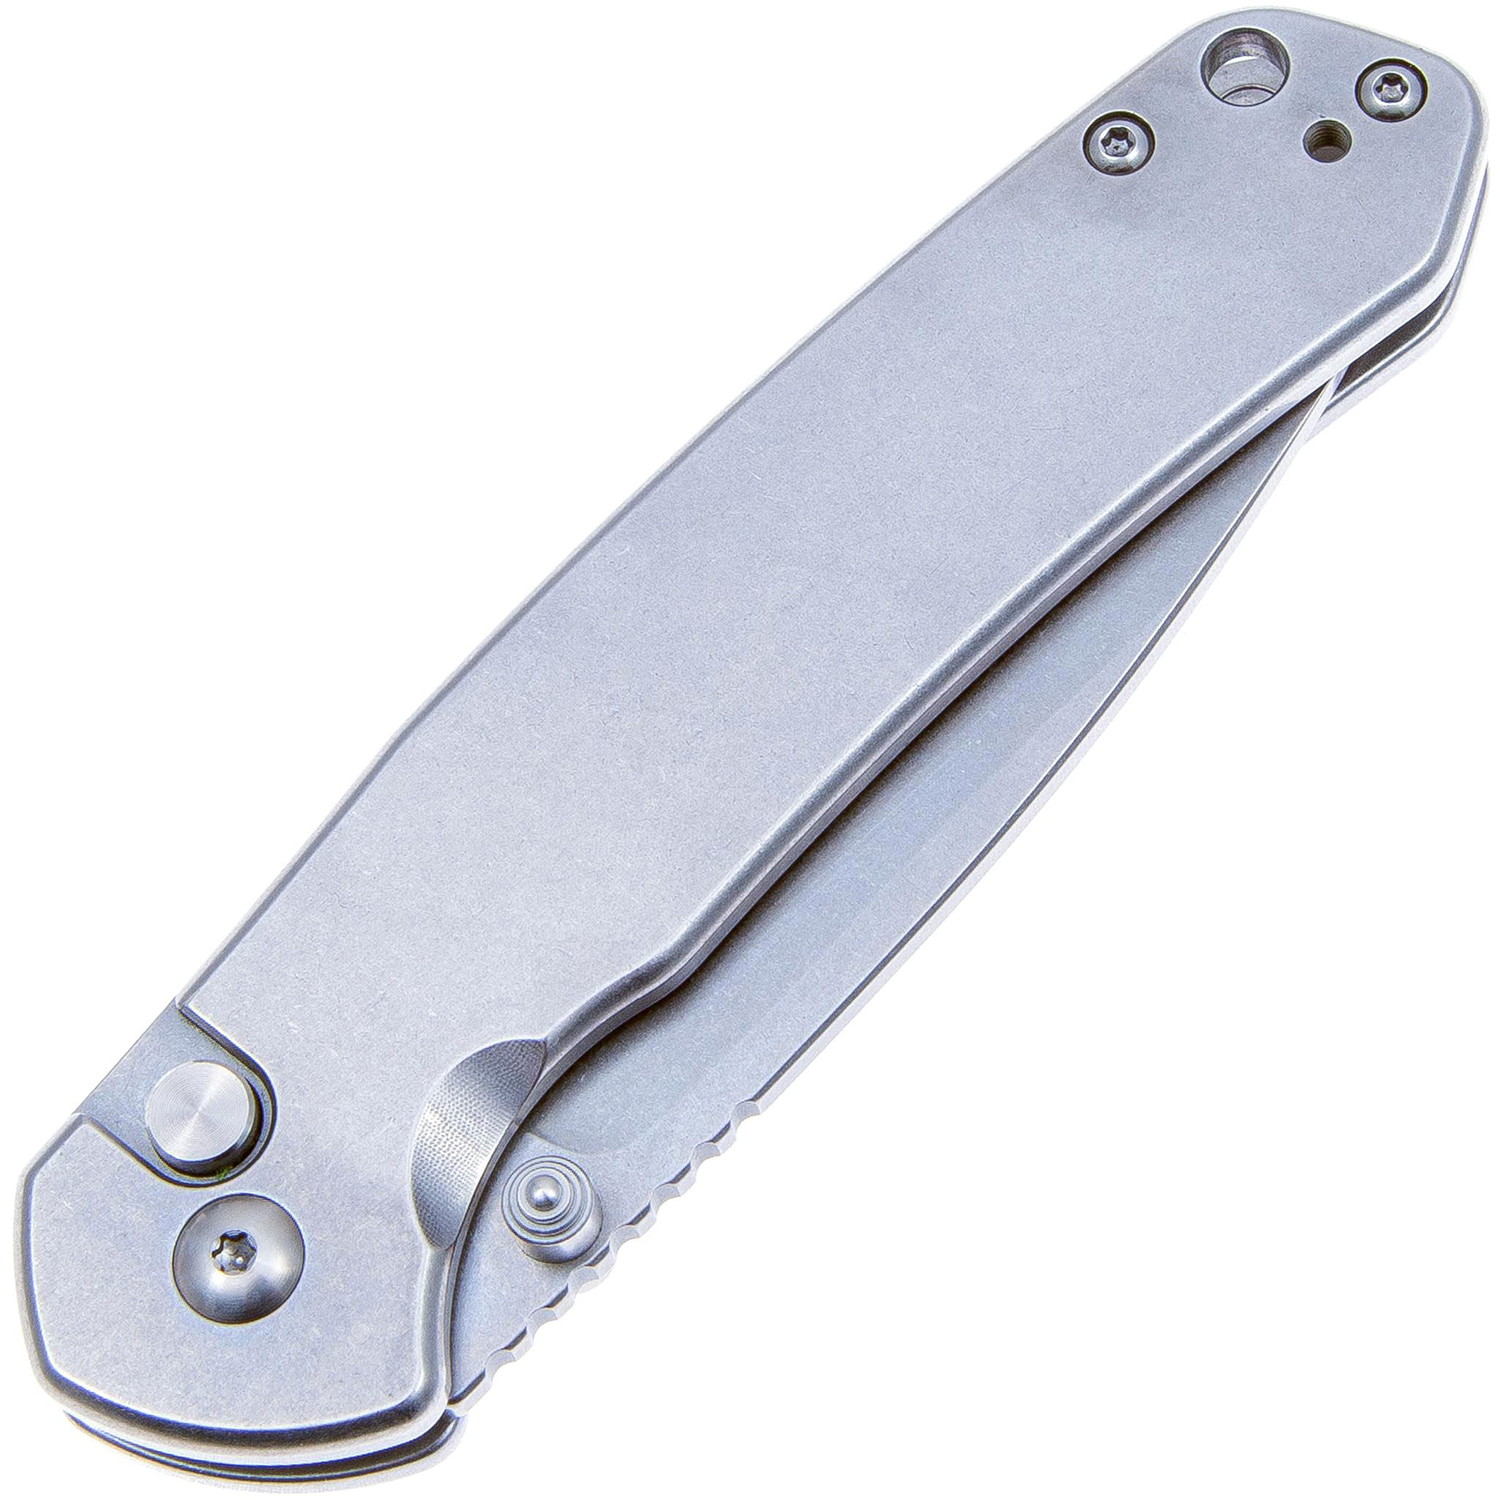 Нож CJRB Pyrite J1925-ST, рукоять сталь, AR-RPM9